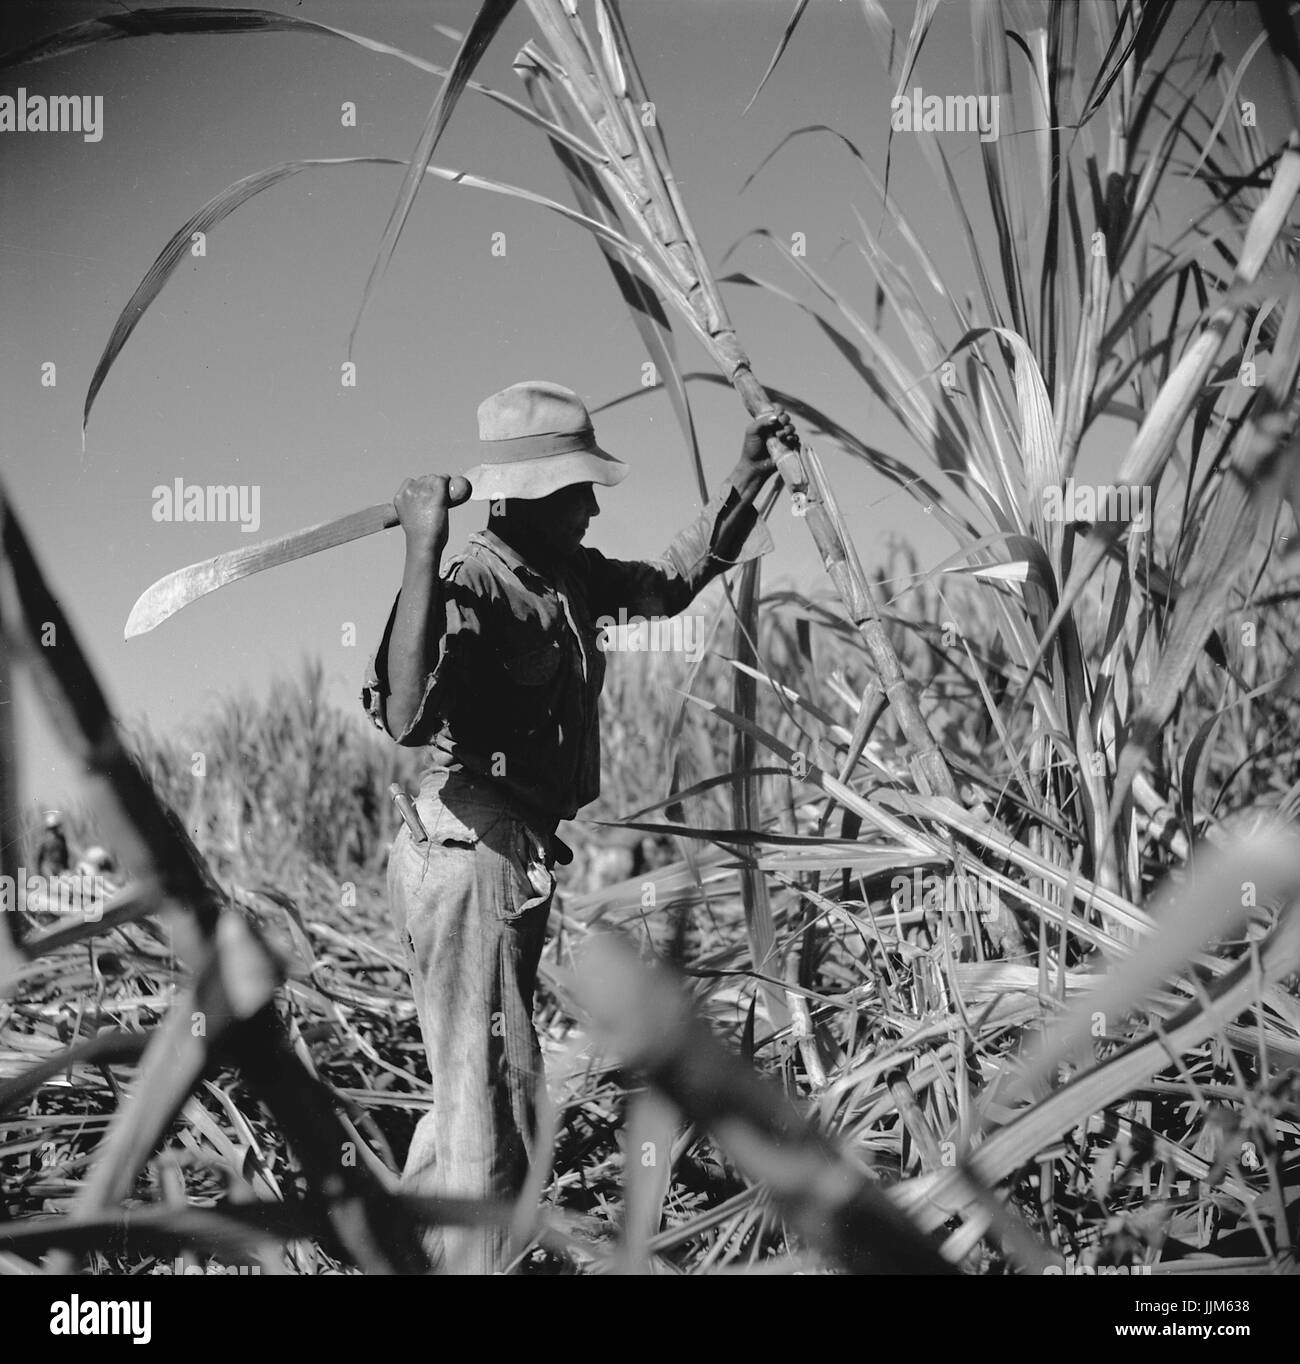 Canne de coupe sur une plantation de sucre près de Ponce, Puerto Rico.Rosskam, Edwin, 1903- photographe.créé/PUBLIÉ1938 Janv. Banque D'Images